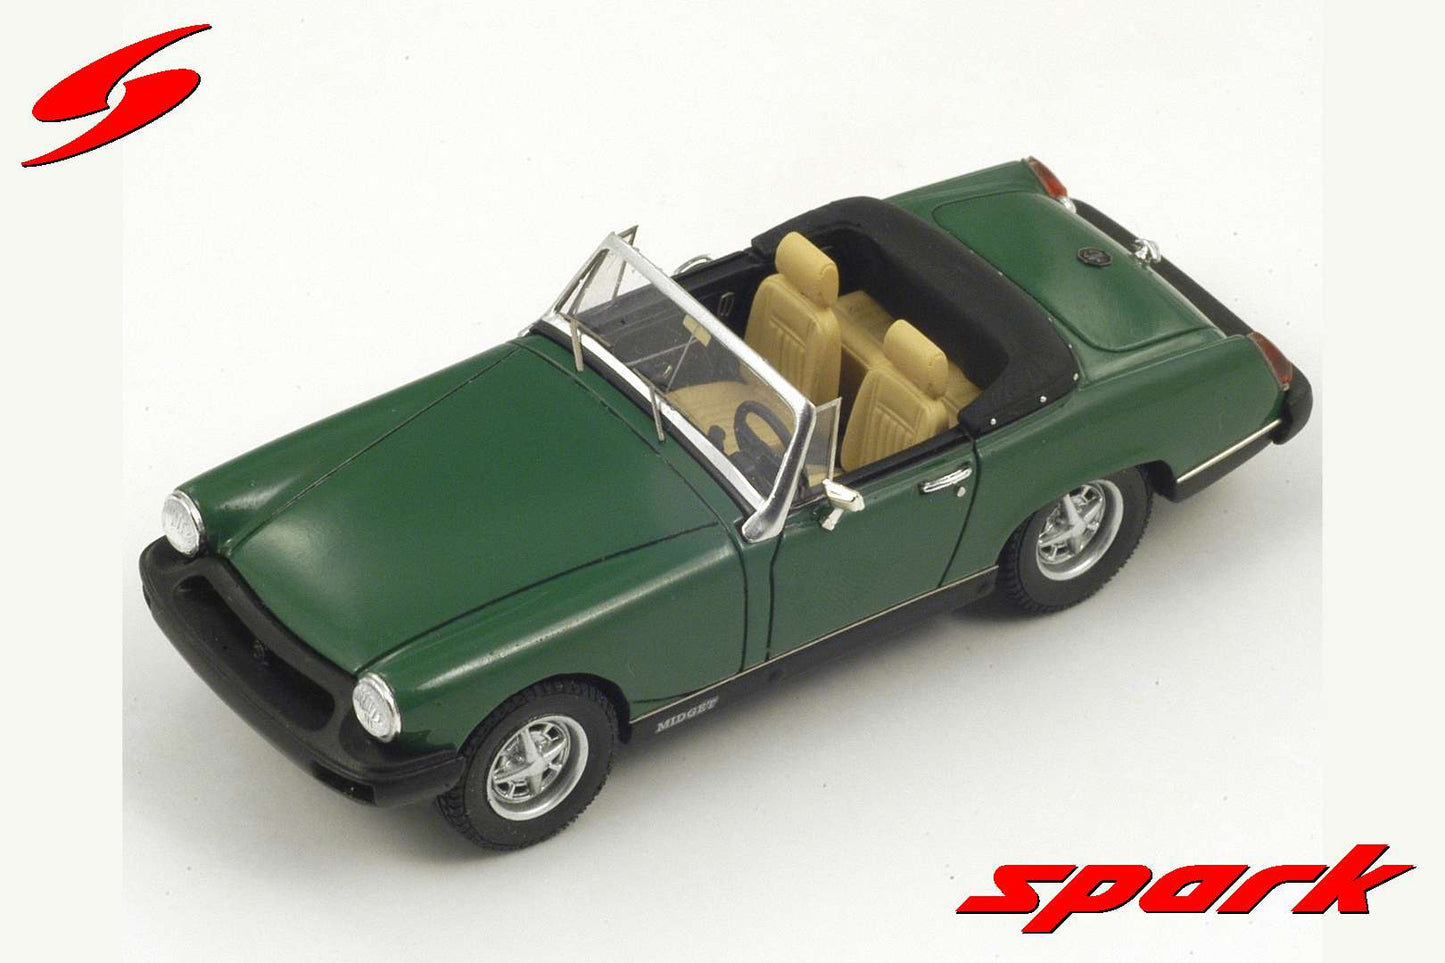 Spark 1:43 MG Midget MK4 Spider 1974 Green S4135